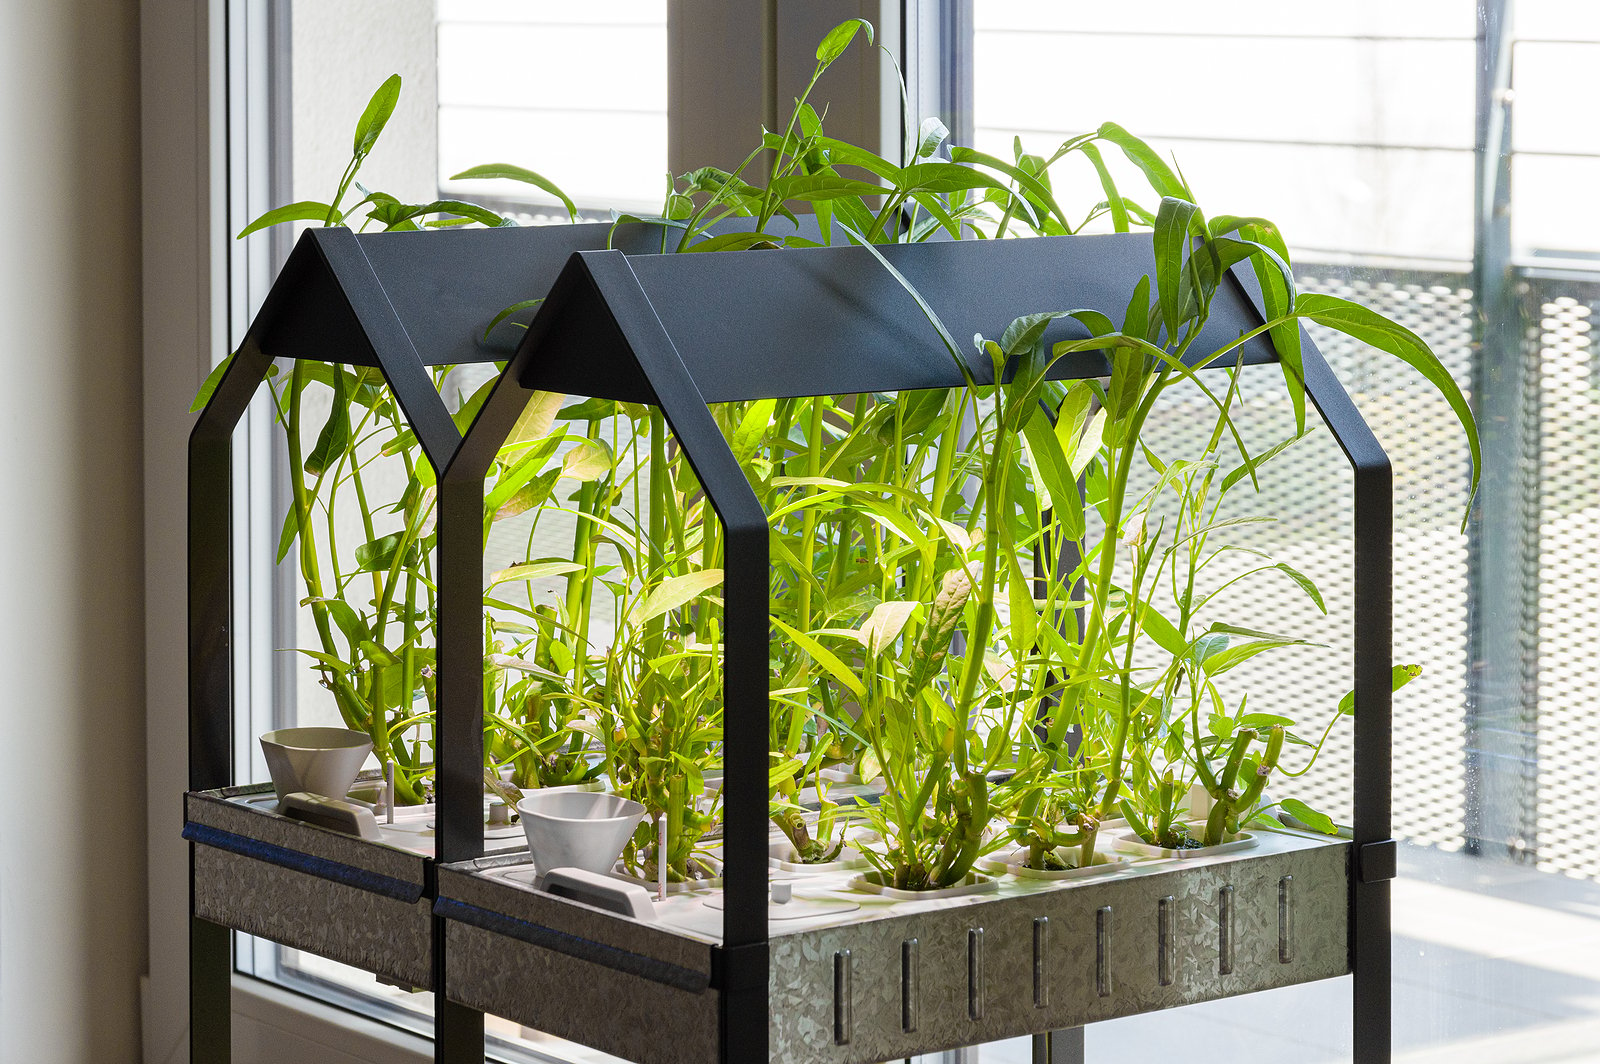 An indoor hydroponic garden